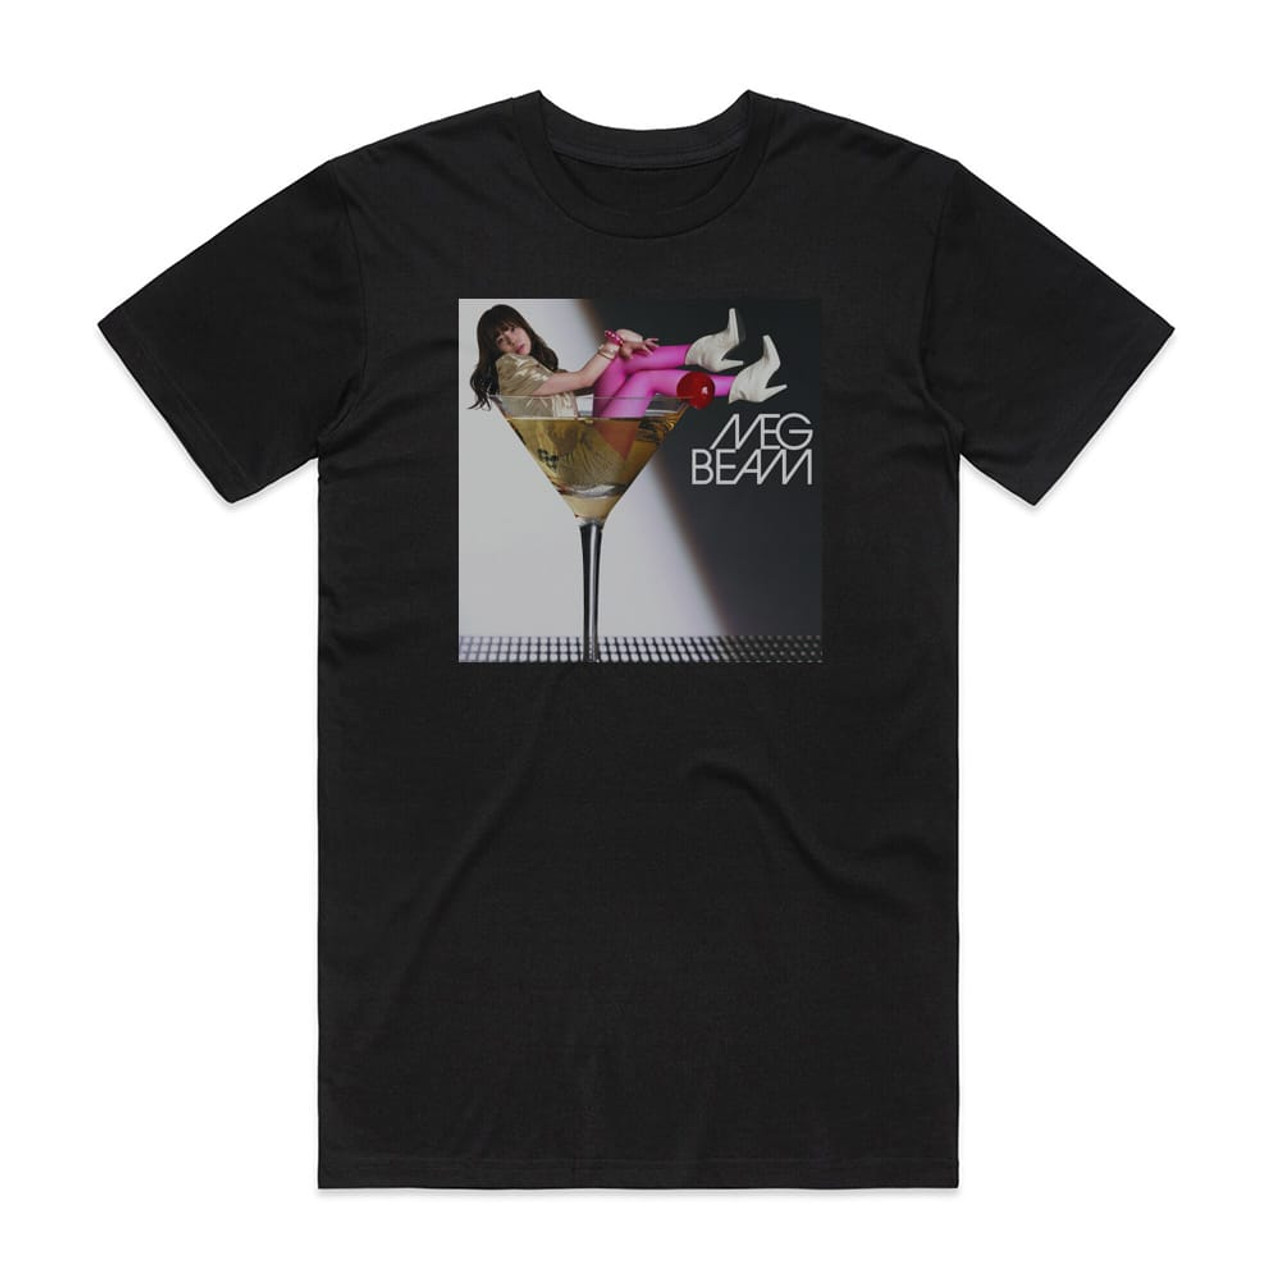 MEG Beam Album Cover T-Shirt Black